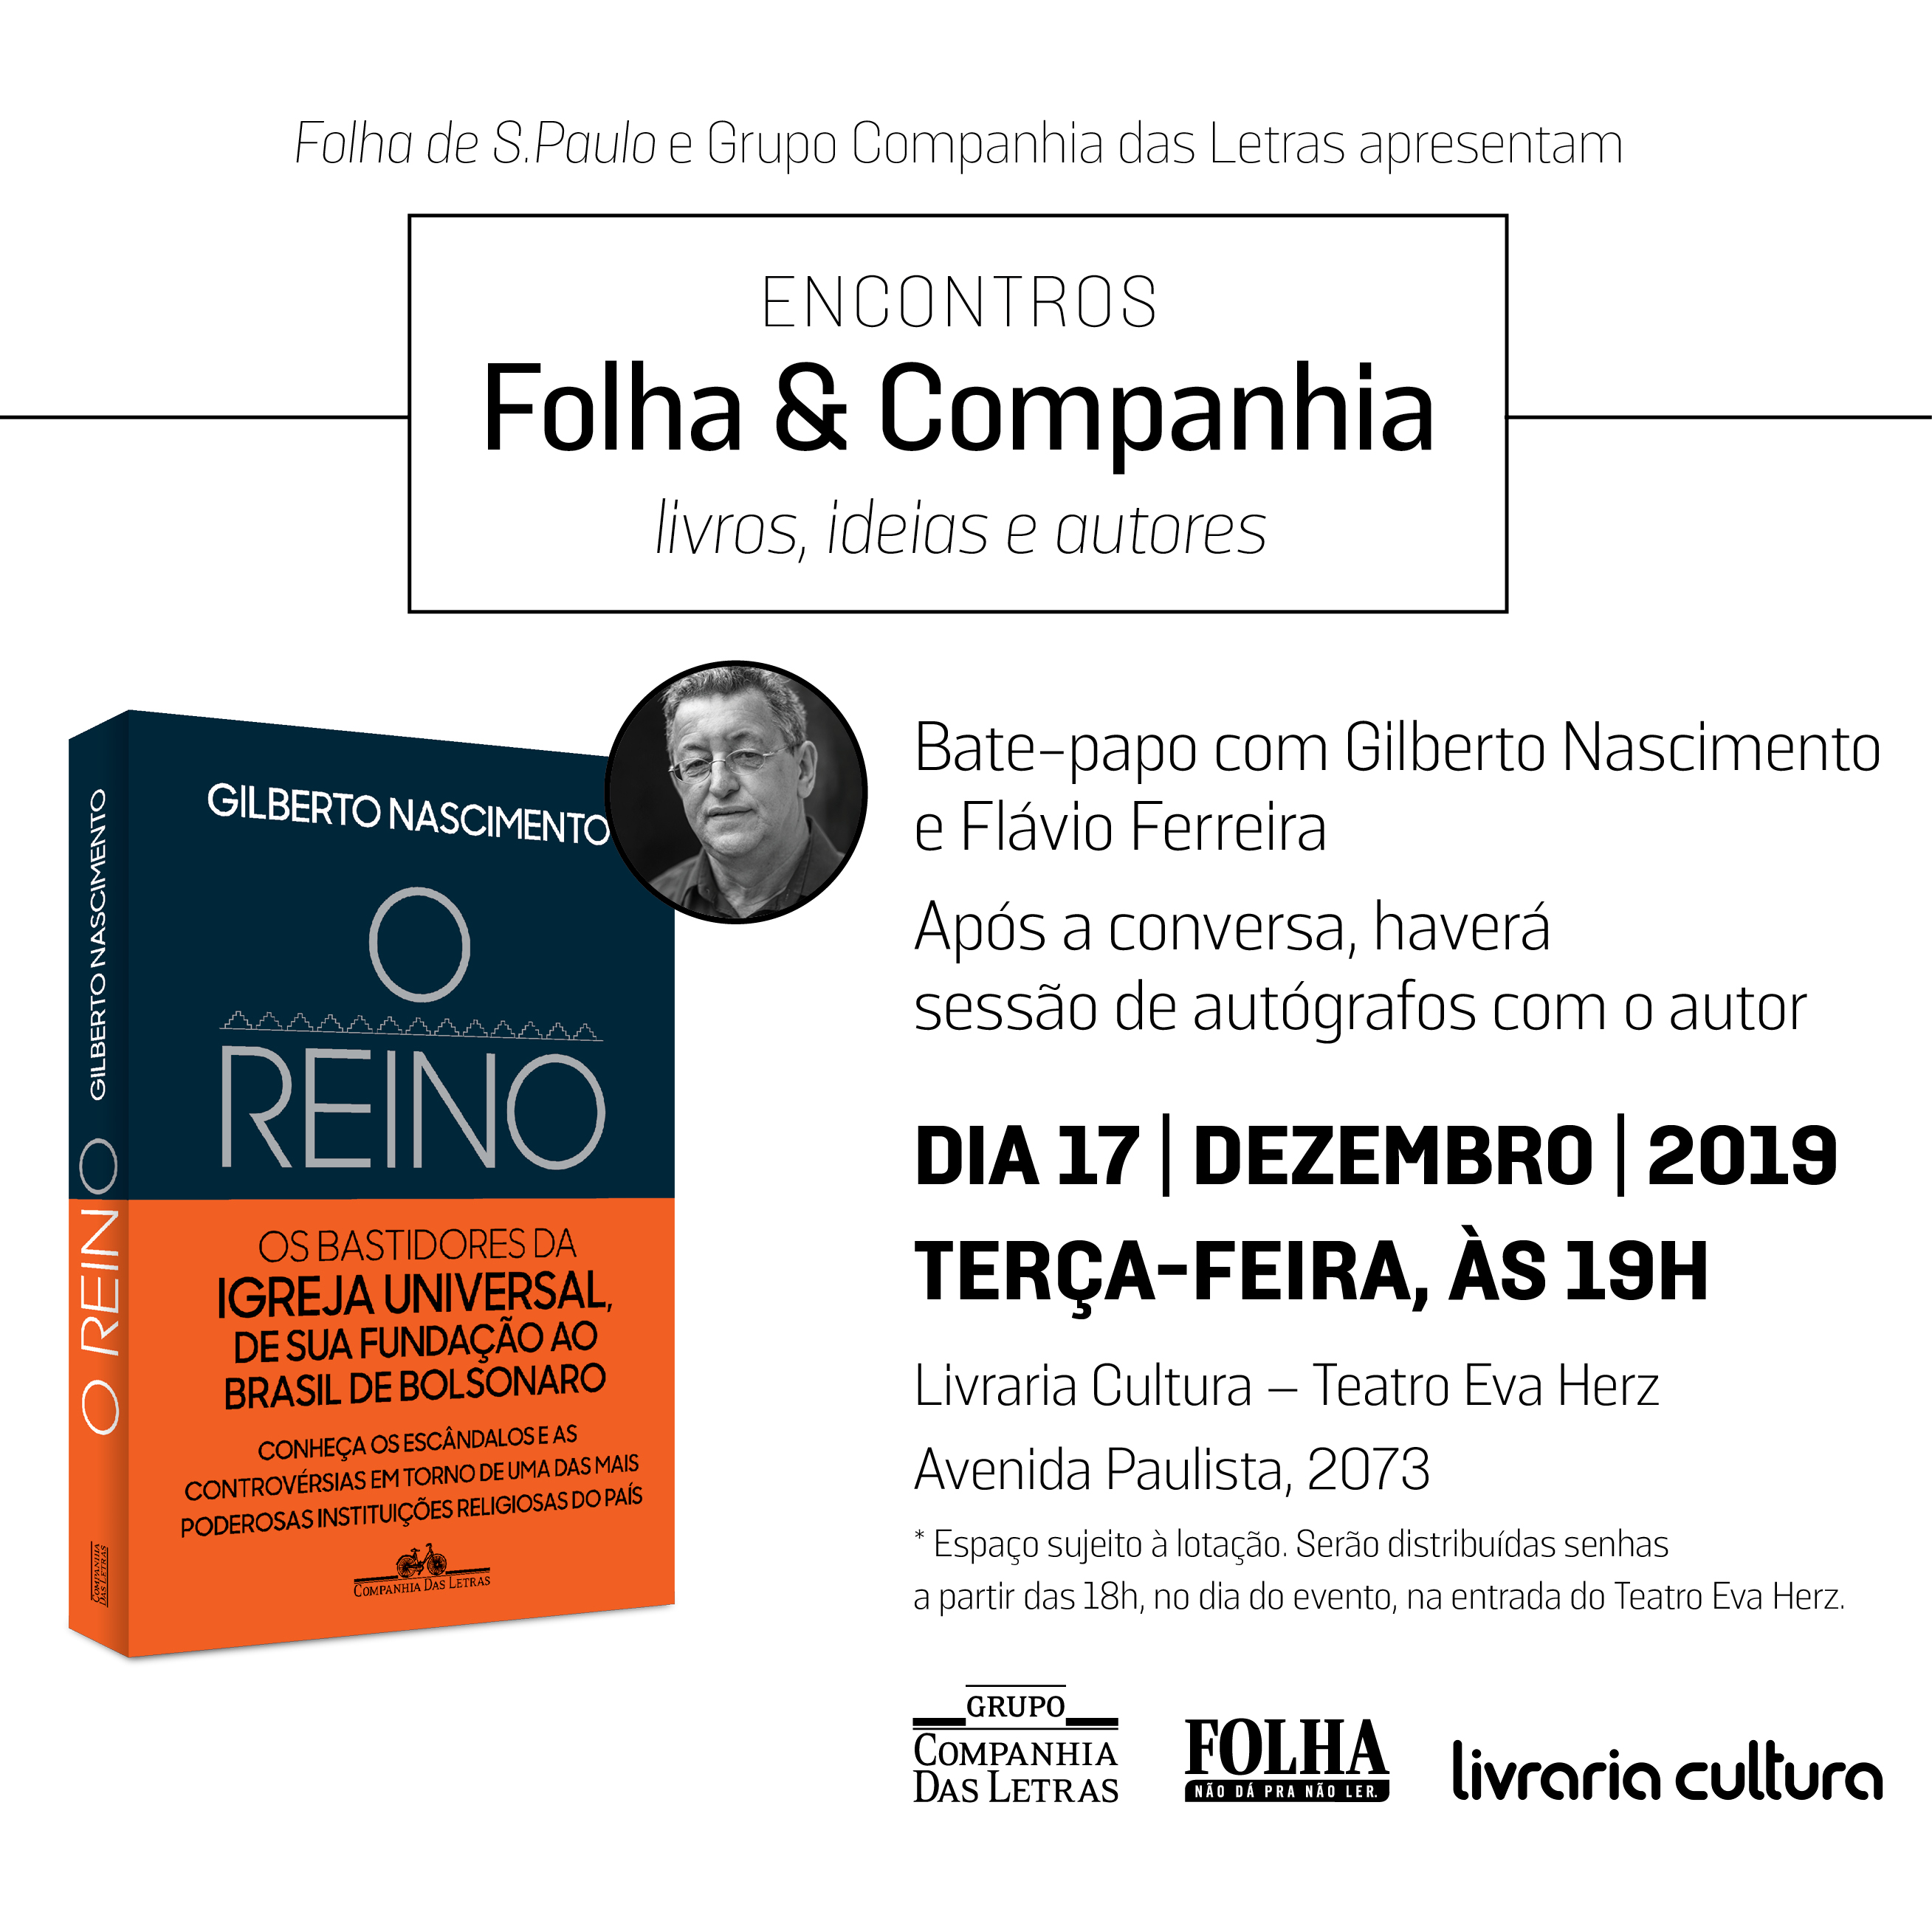 Bate-papo e sessão de autógrafos: 17/12 às 19h na Livraria Cultura da Avenida Paulista